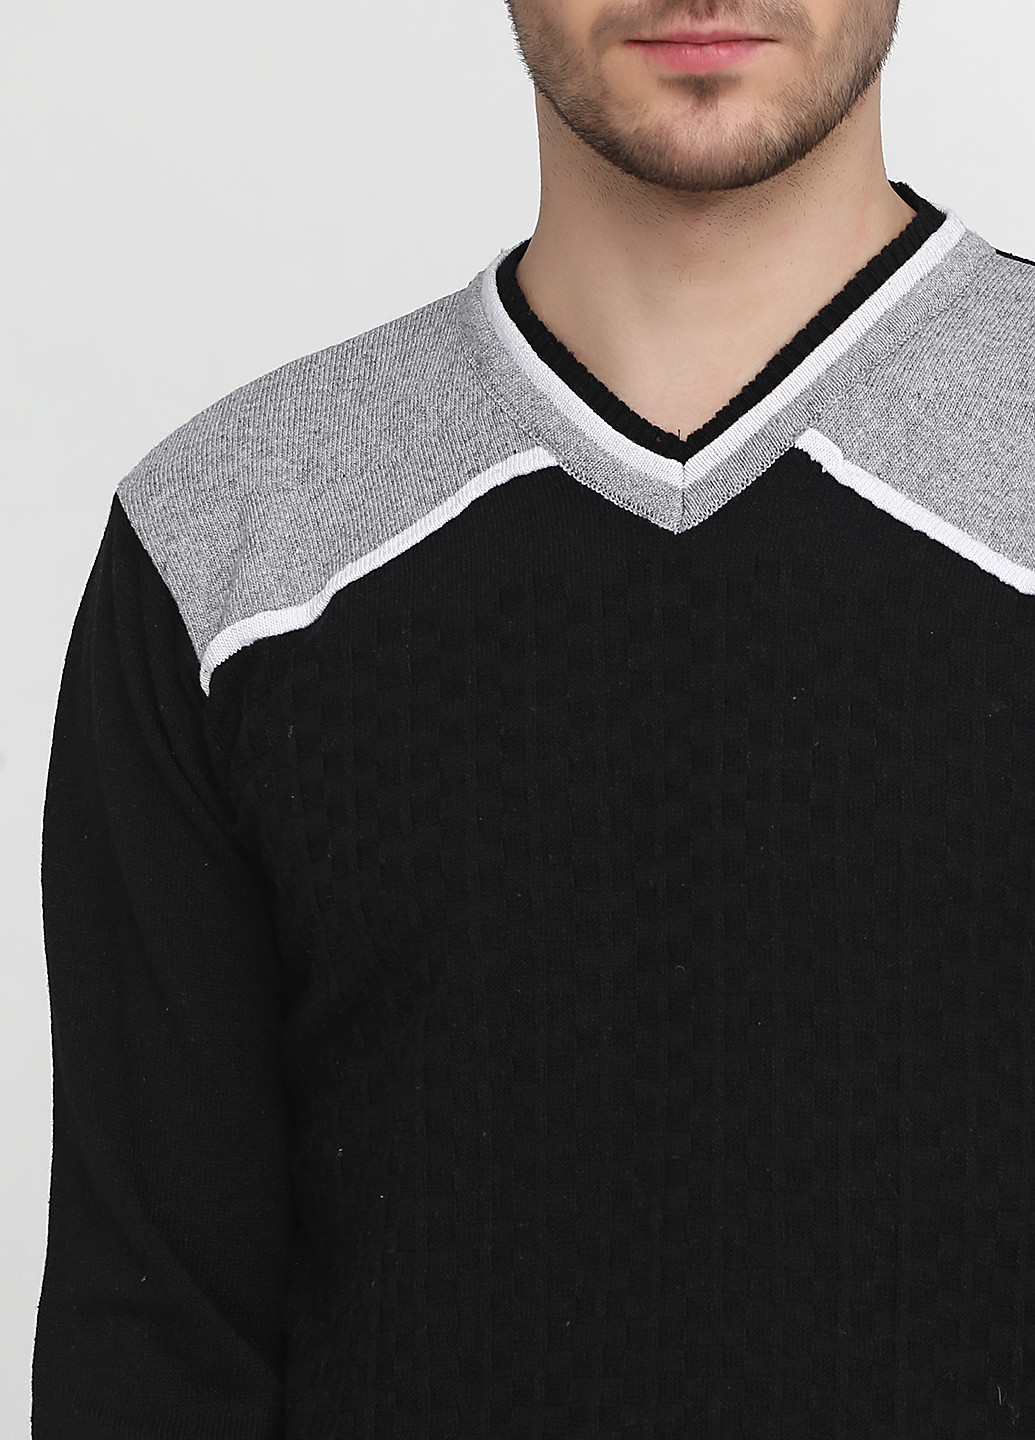 Черный демисезонный пуловер пуловер Enbiya